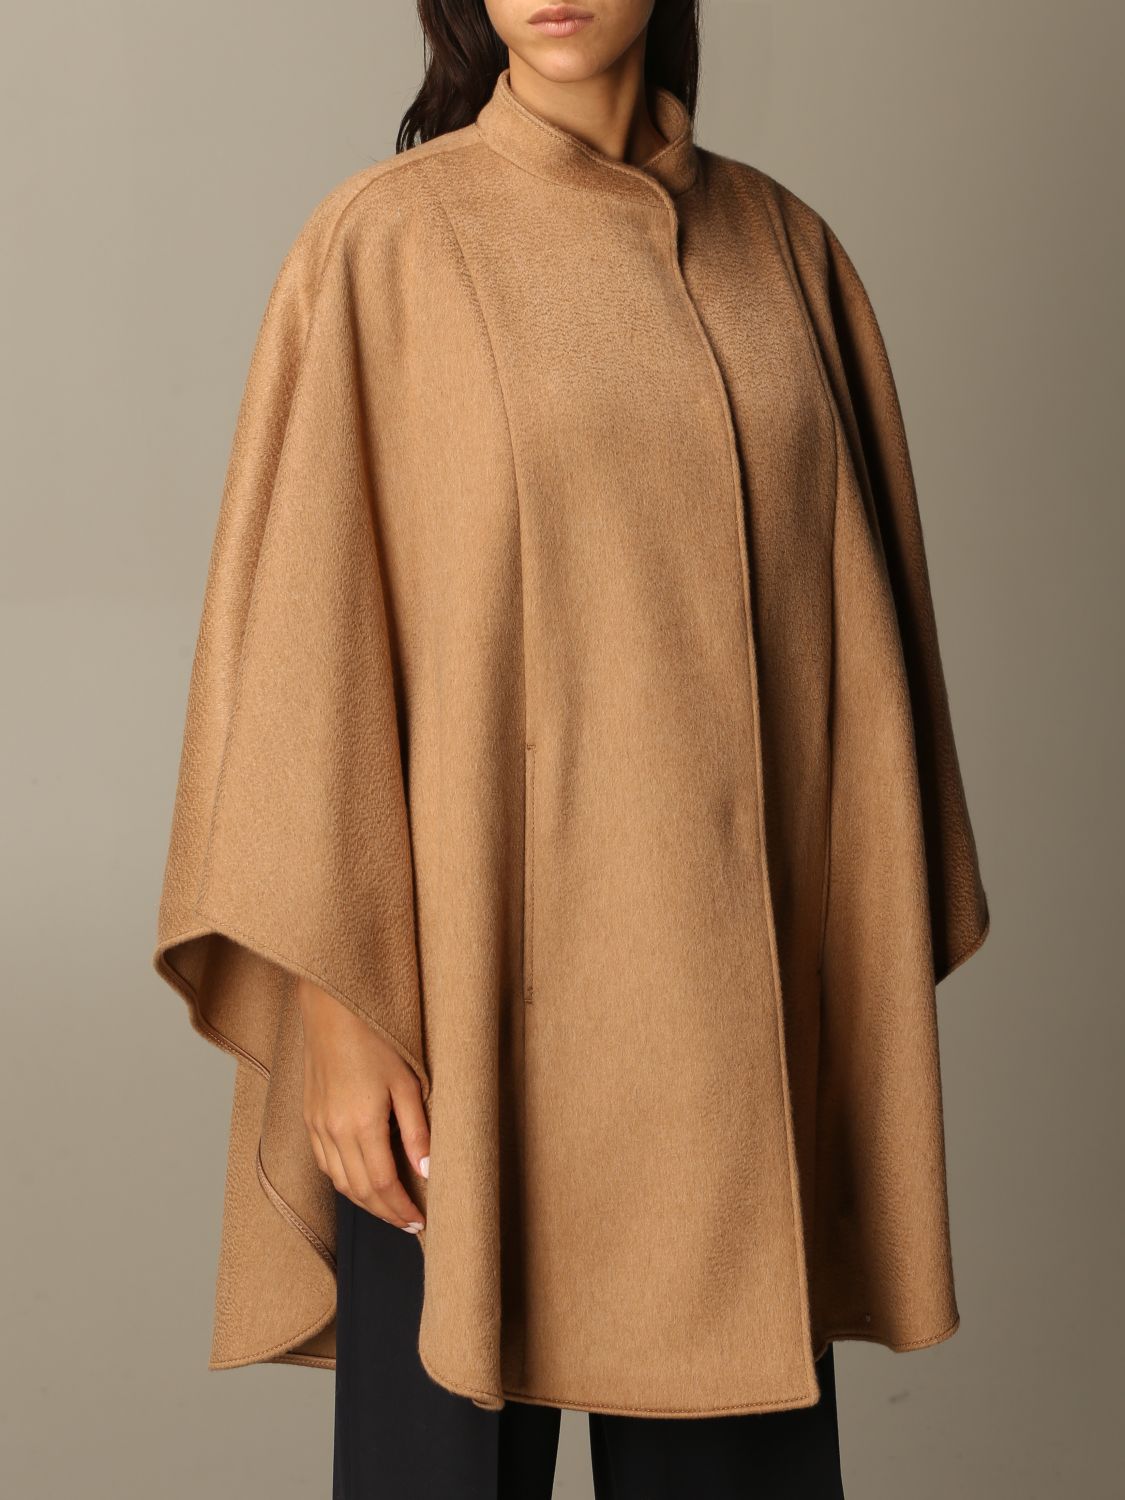 Max Mara Outlet: cape coat in wool blend - Camel | Max Mara cape ...